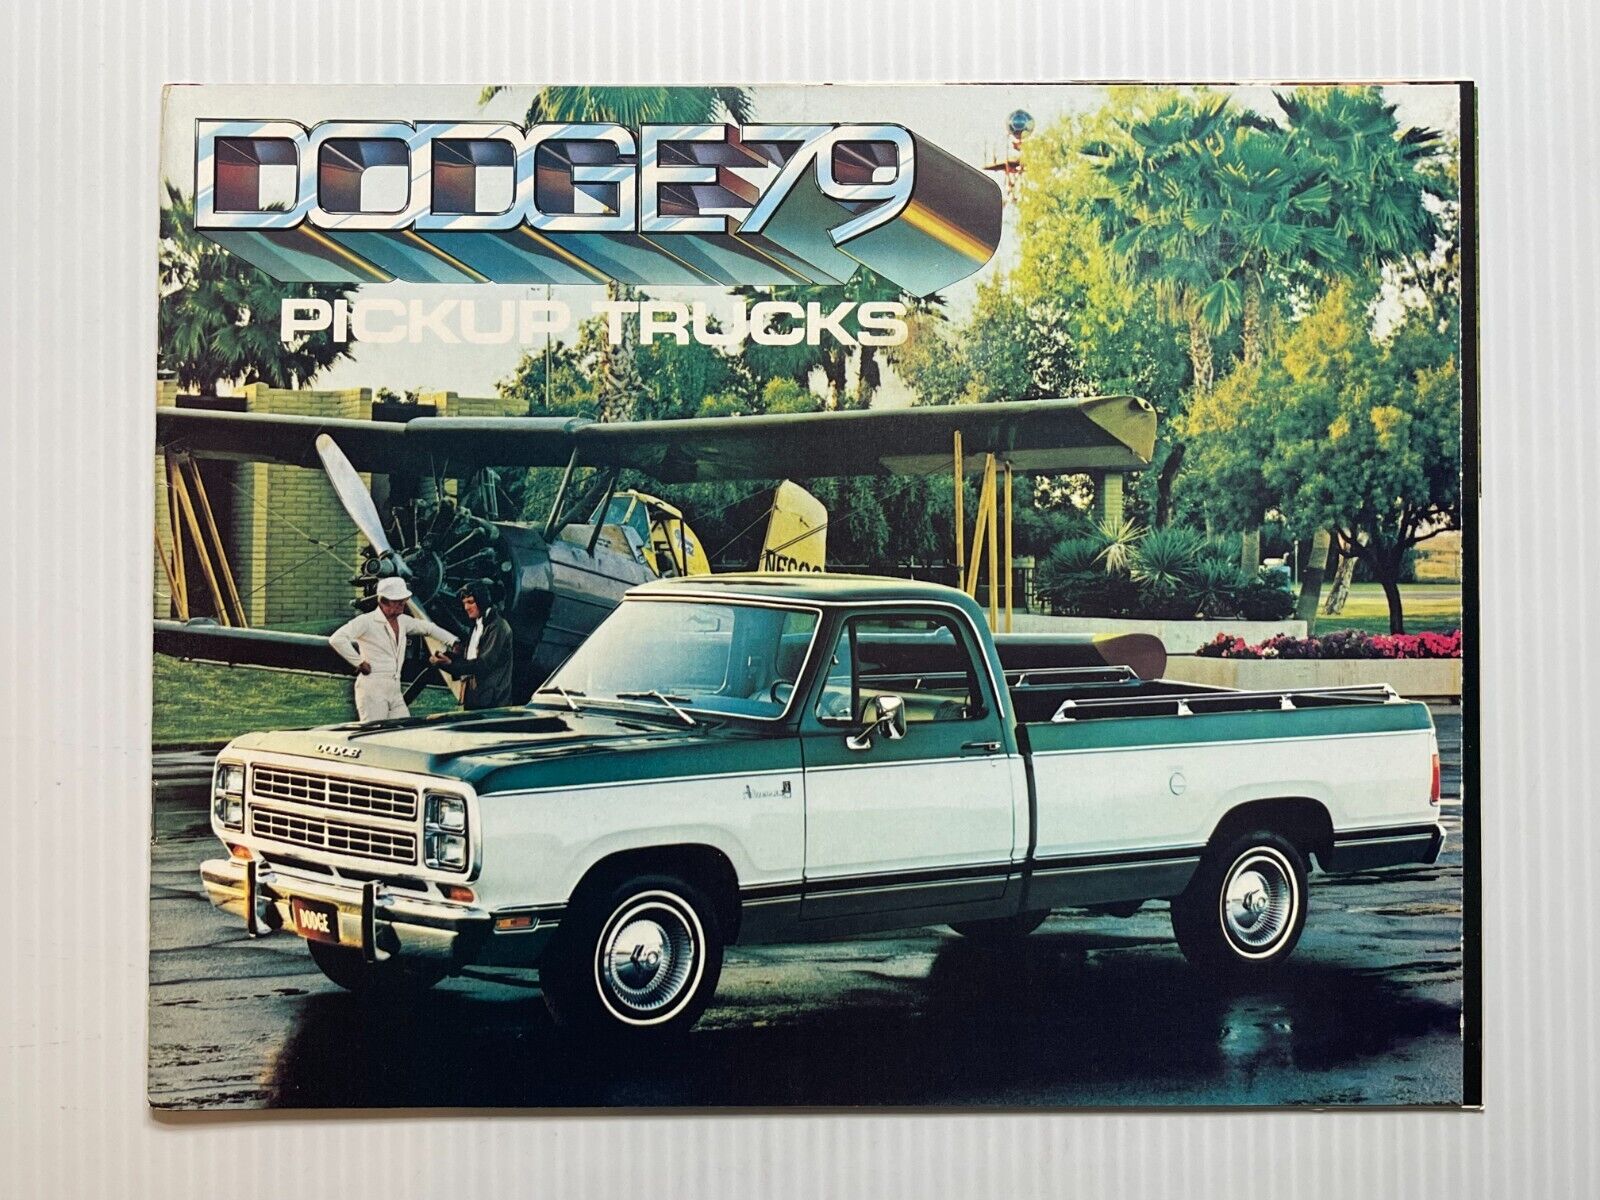 Vintage Original - 1979 Dodge Pickup Trucks Sales Brochure - (15 Color Pages)